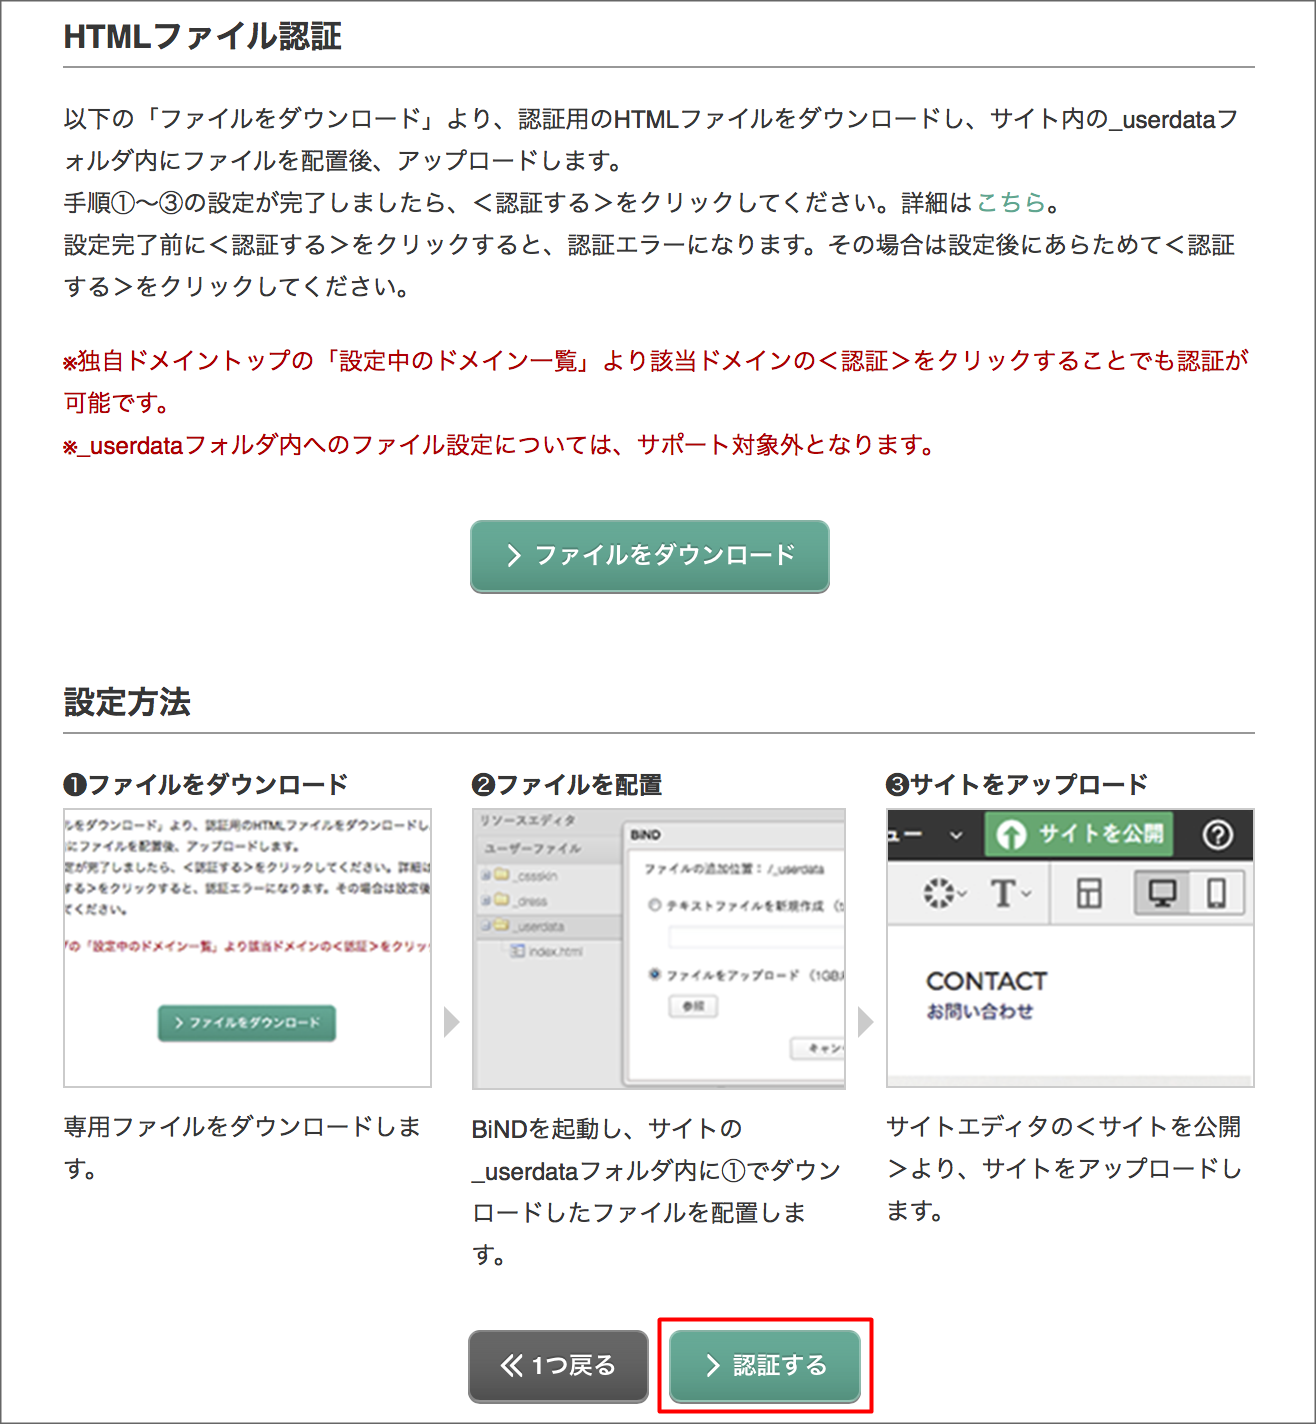 http://www.digitalstage.jp/support/weblife/manual/02-05-15_008.png